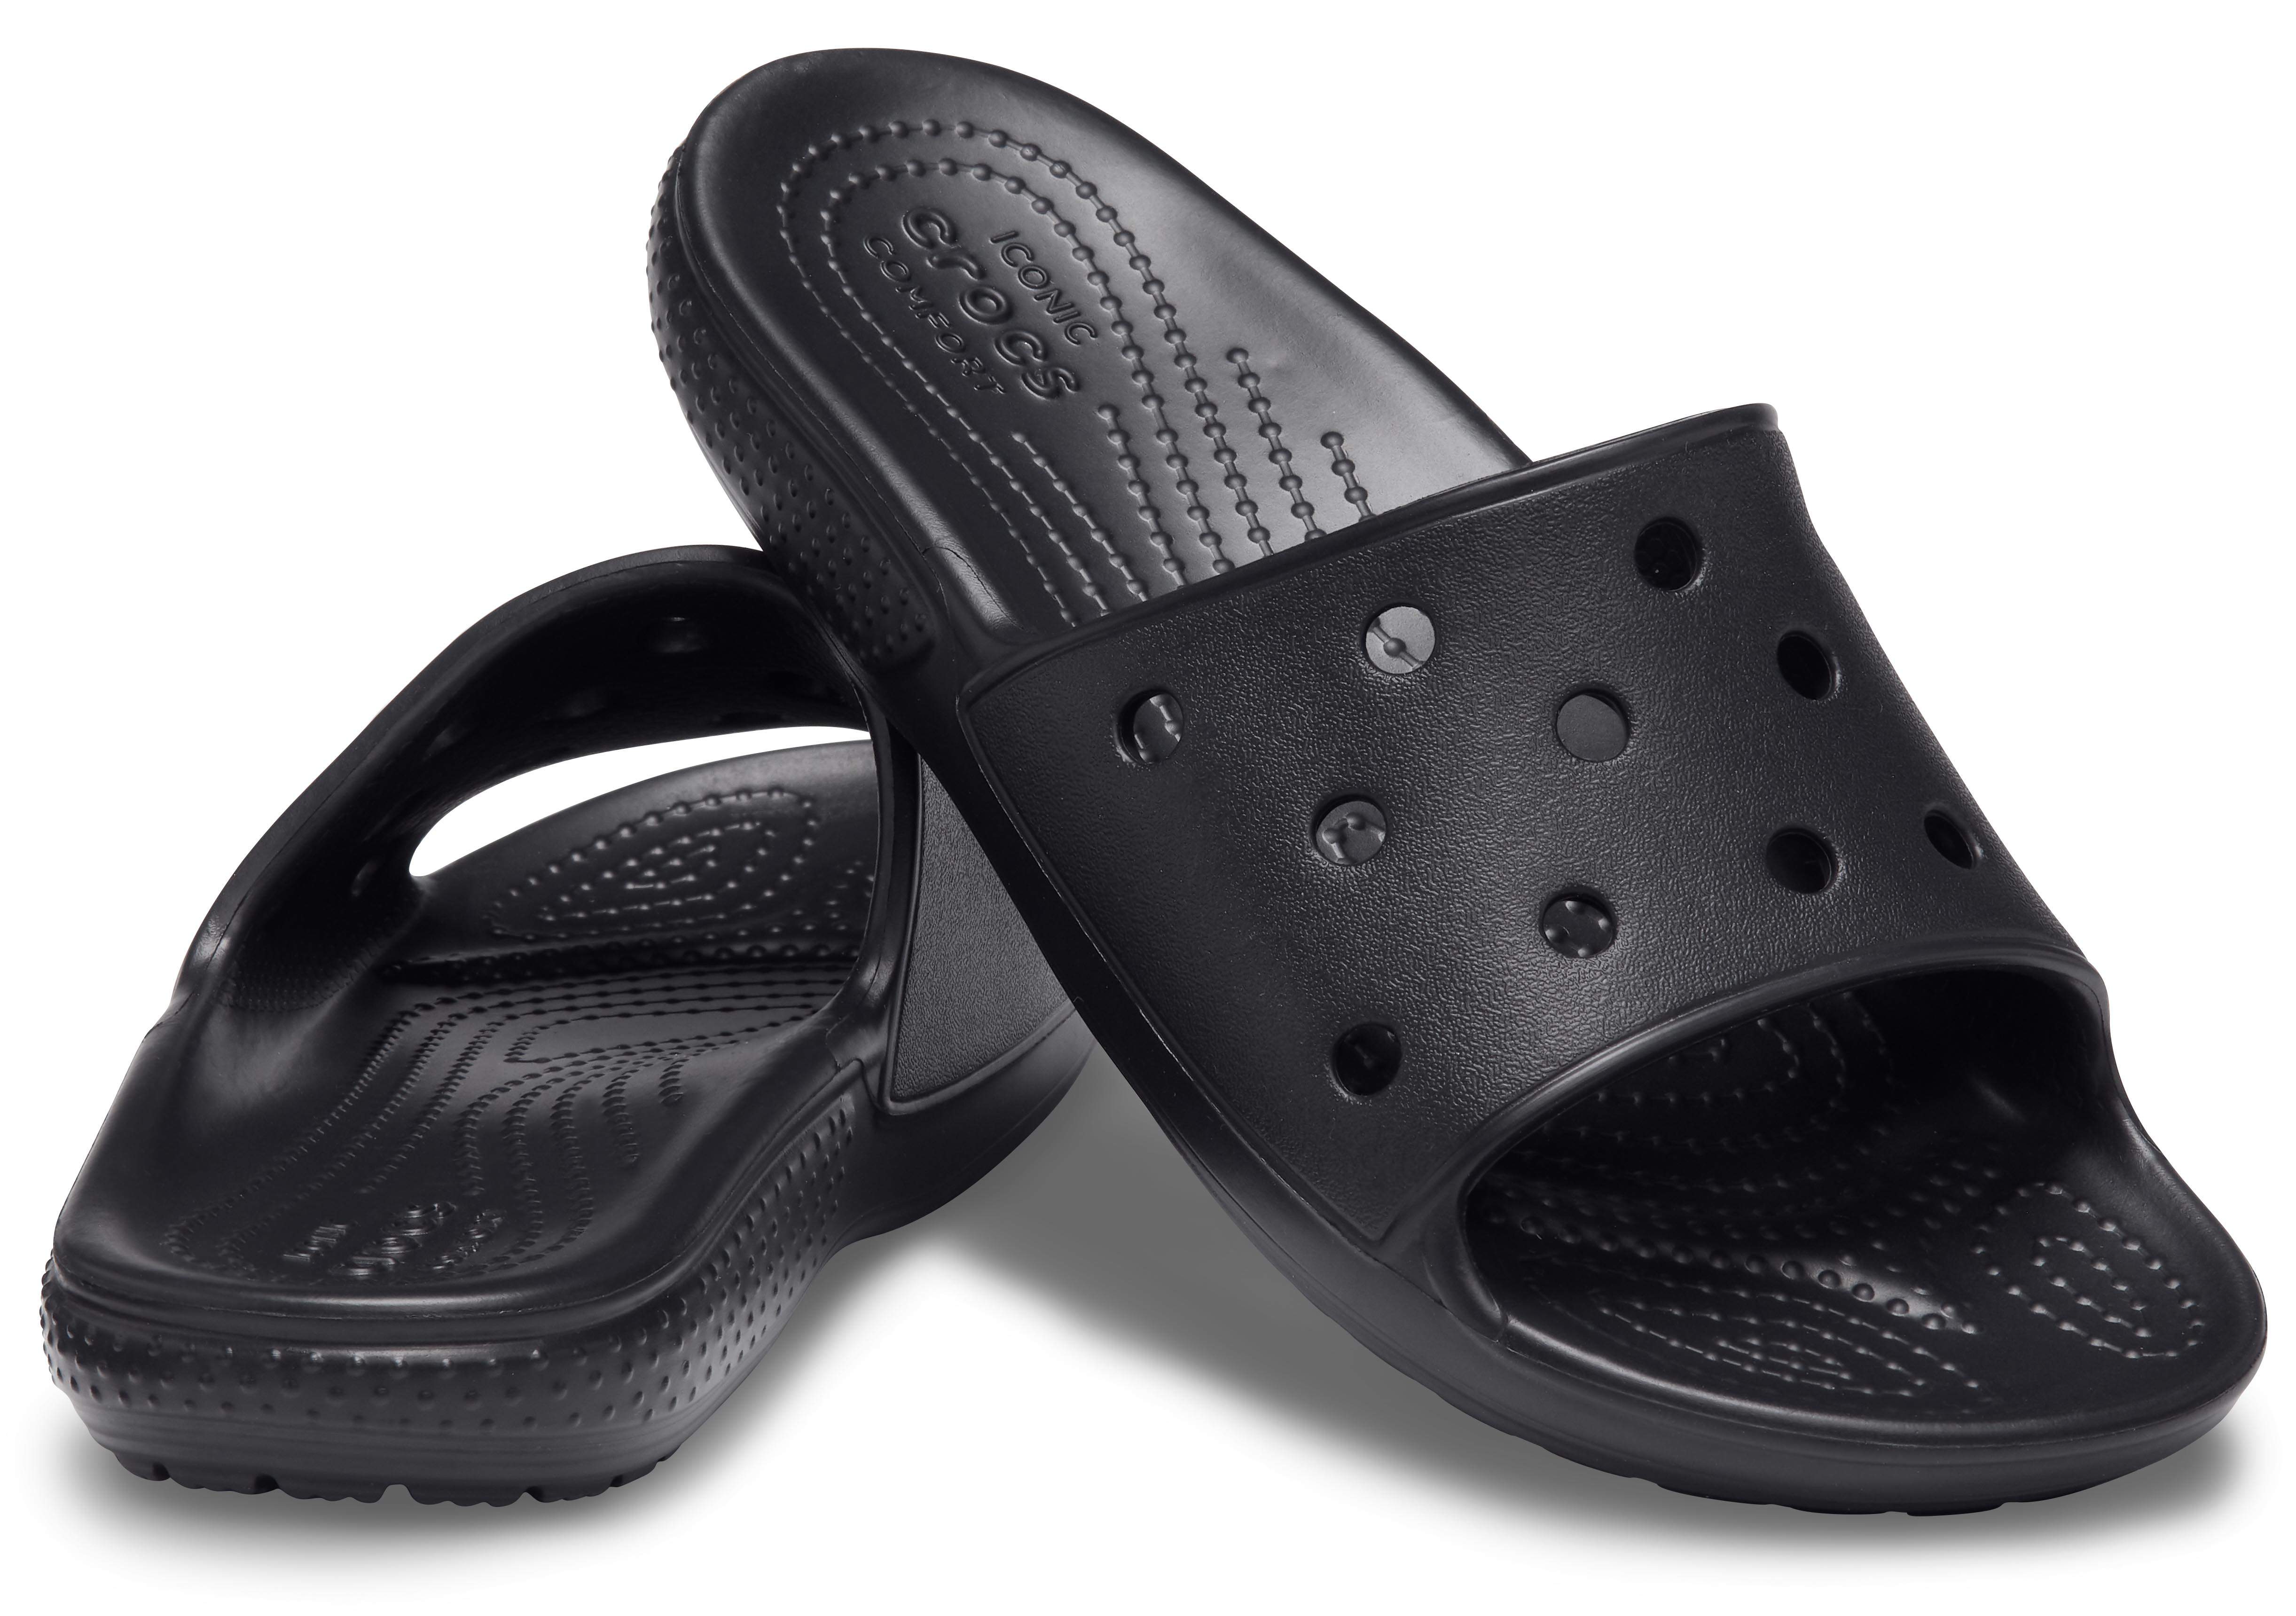 classic crocs slide